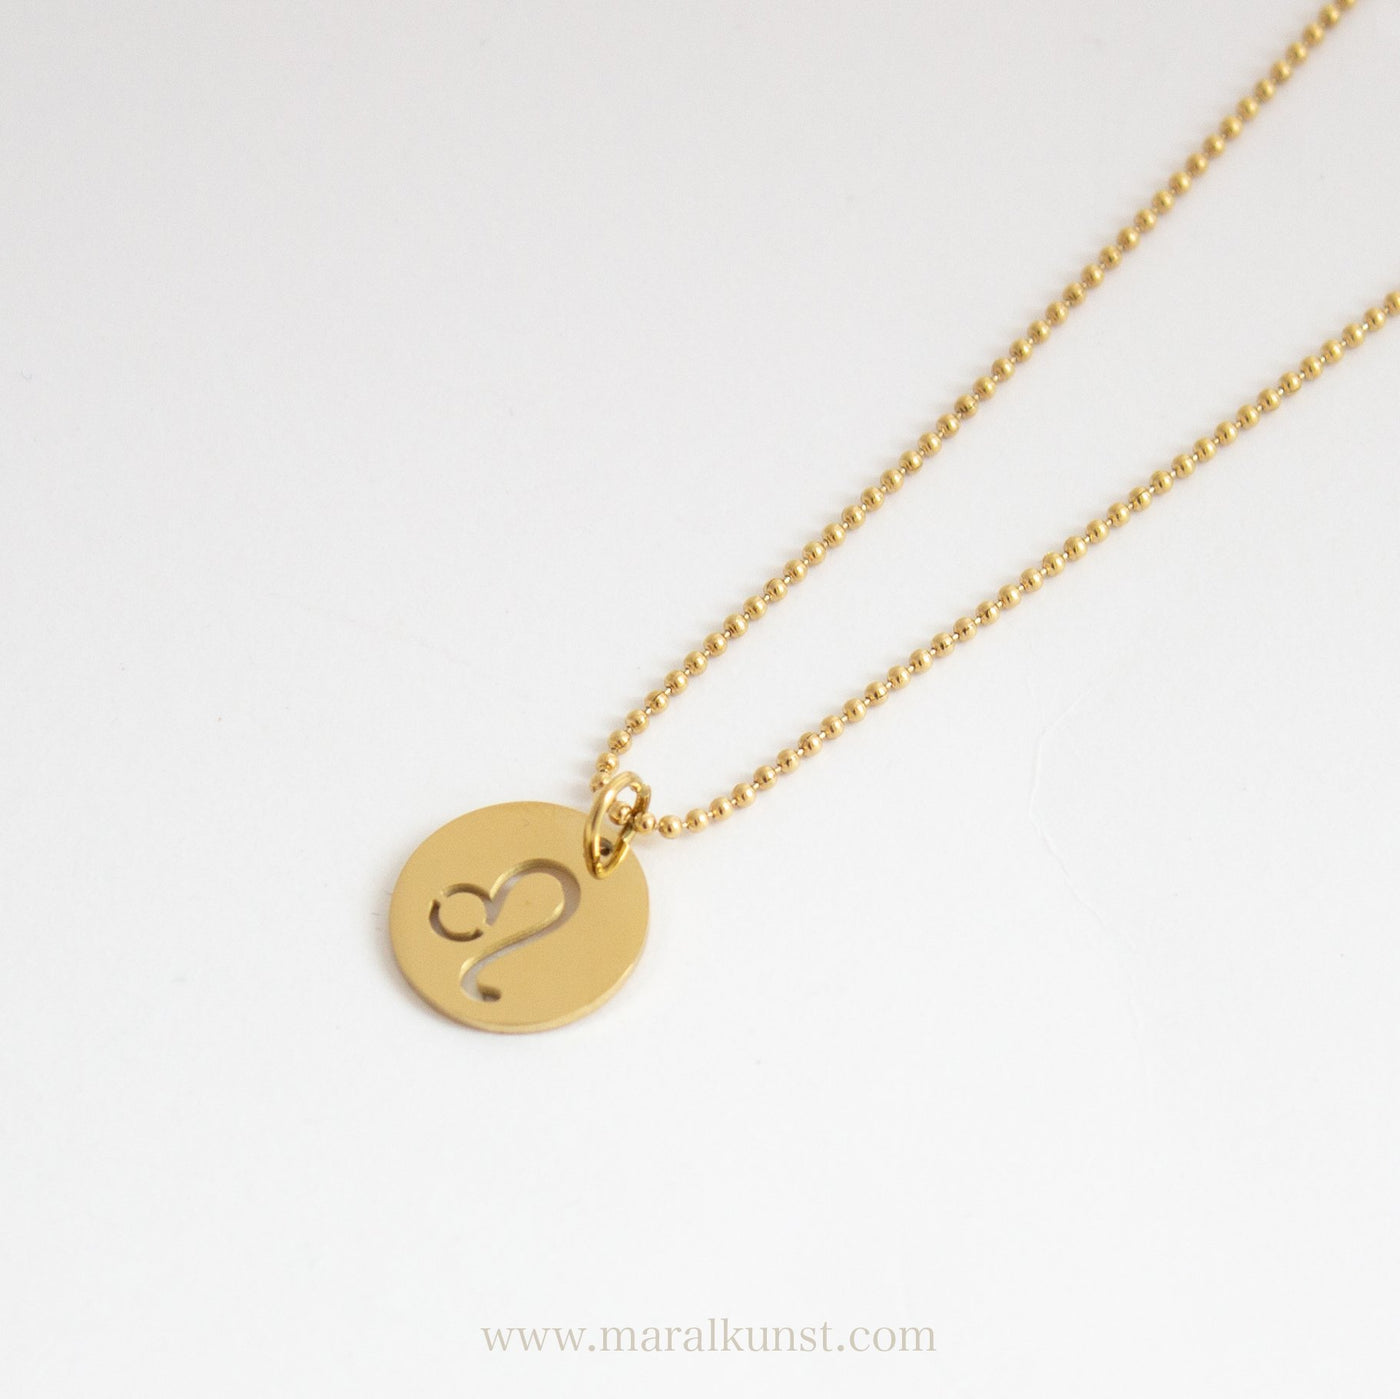 Leo Zodiac Sign Necklace - Maral Kunst Jewelry